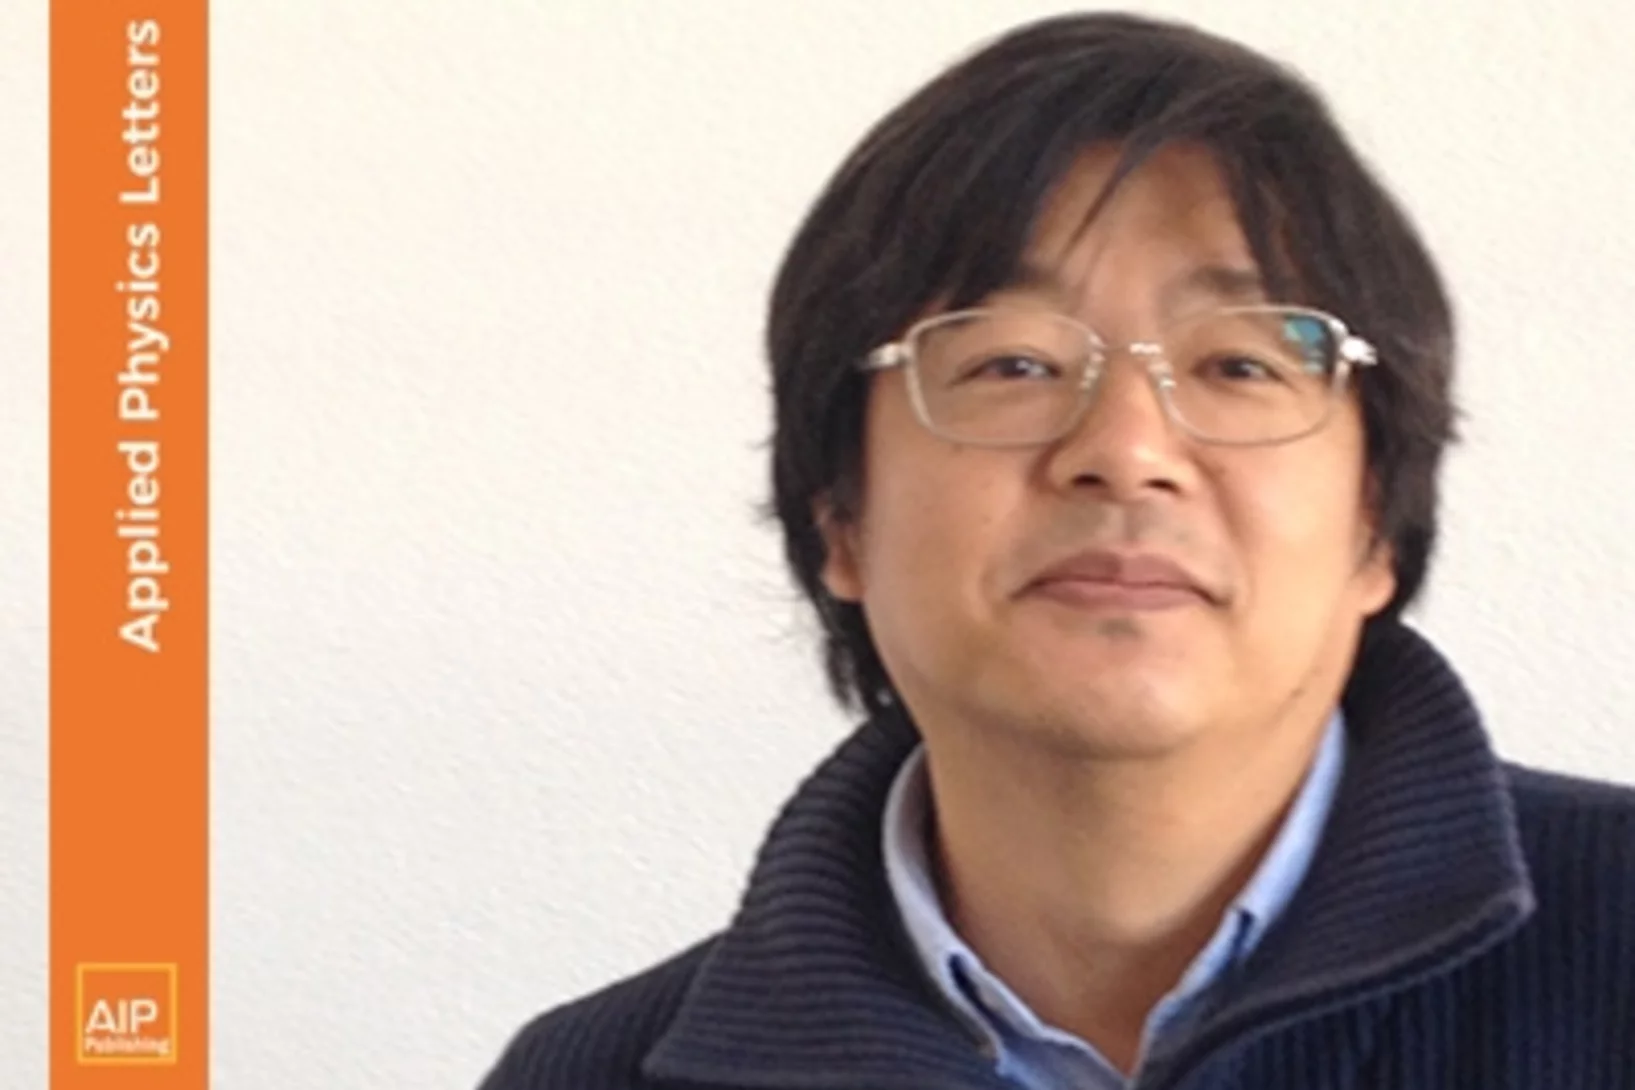 Dr. Soichiro Tsujino